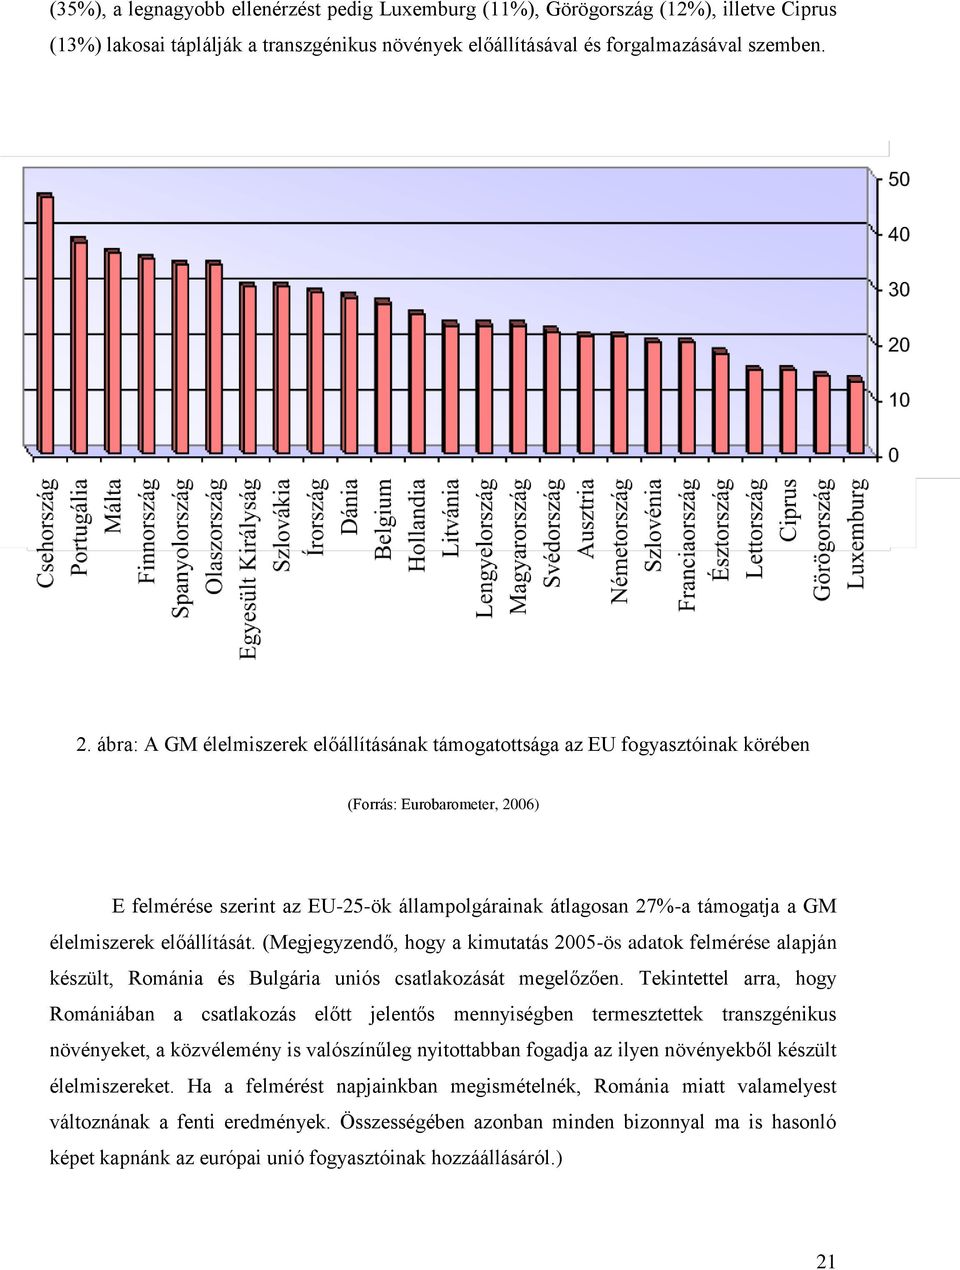 élelmiszerek előállítását. (Megjegyzendő, hogy a kimutatás 2005-ös adatok felmérése alapján készült, Románia és Bulgária uniós csatlakozását megelőzően.